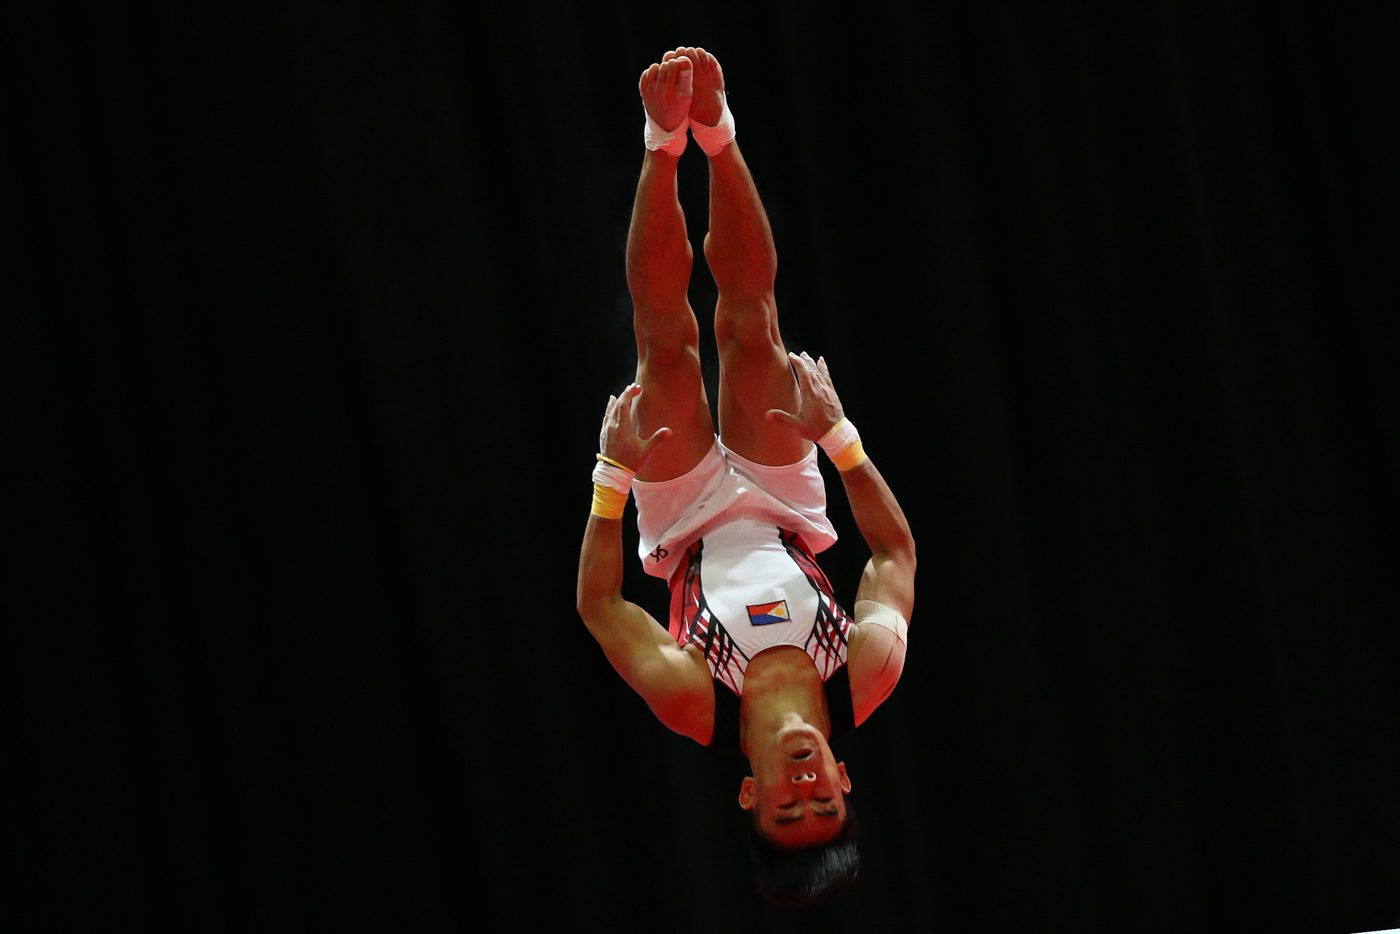 Gymnastics: Asian Games first-timers eye podium landing